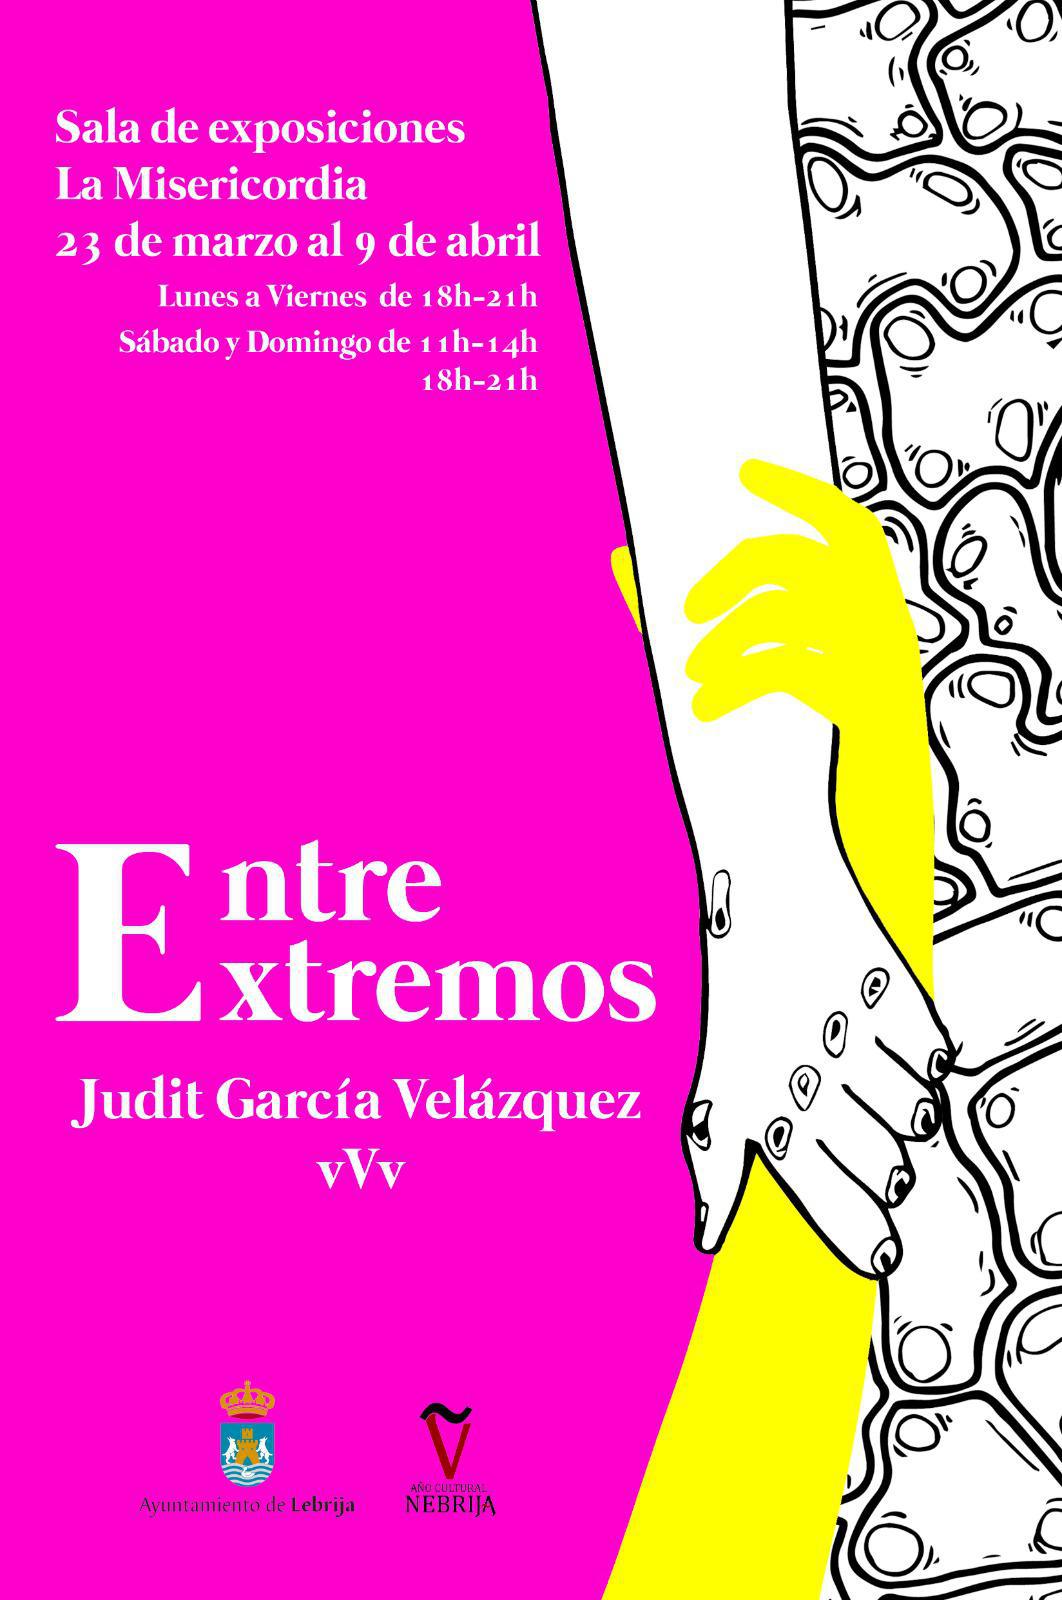 La Sala de Exposiciones de la Misericordia acoge la exposición “Entre Extremos” de Judit García